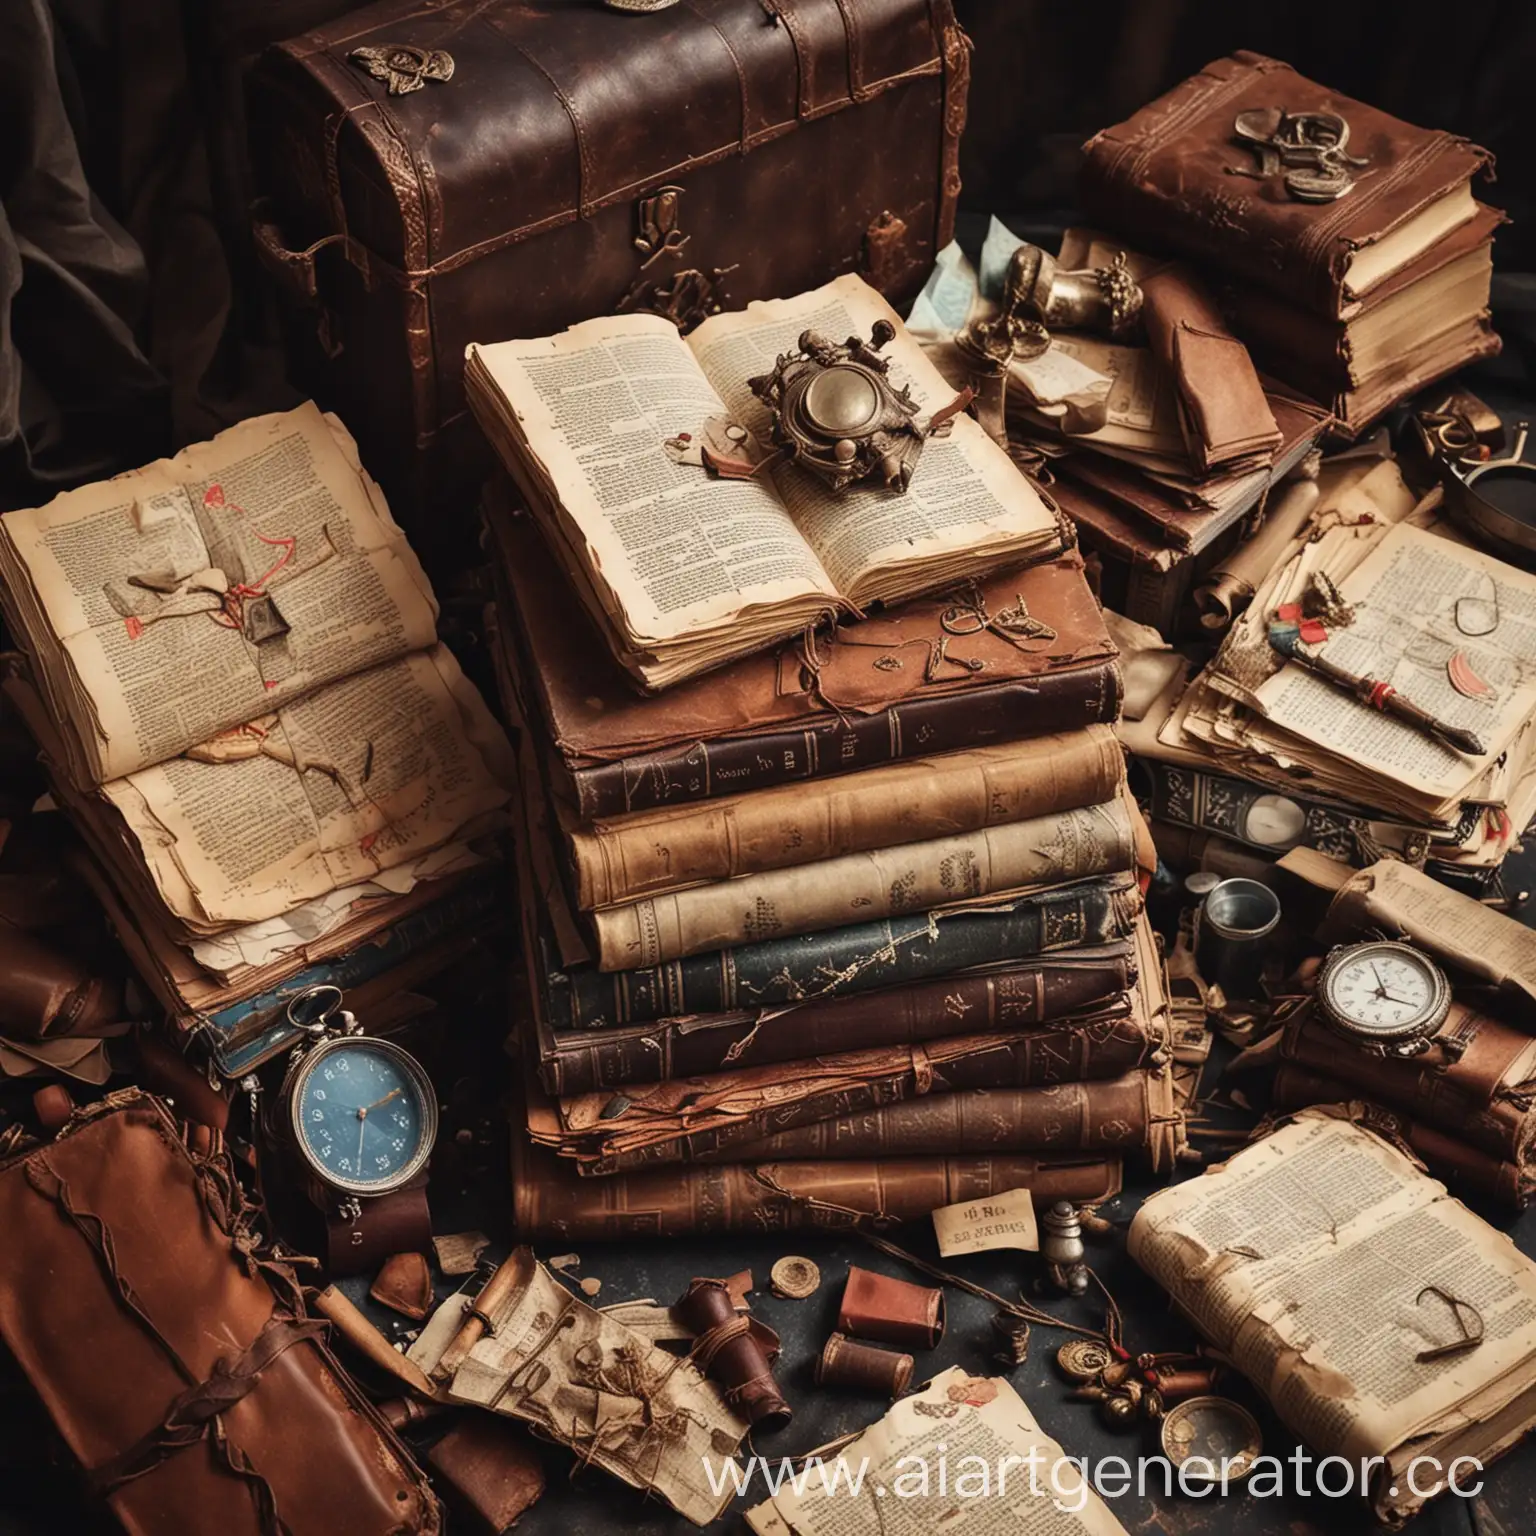 стопка книг лежит в мусоре, грязные книги, сверху лежит дневник в кожаной обложке, с картой сокровищ